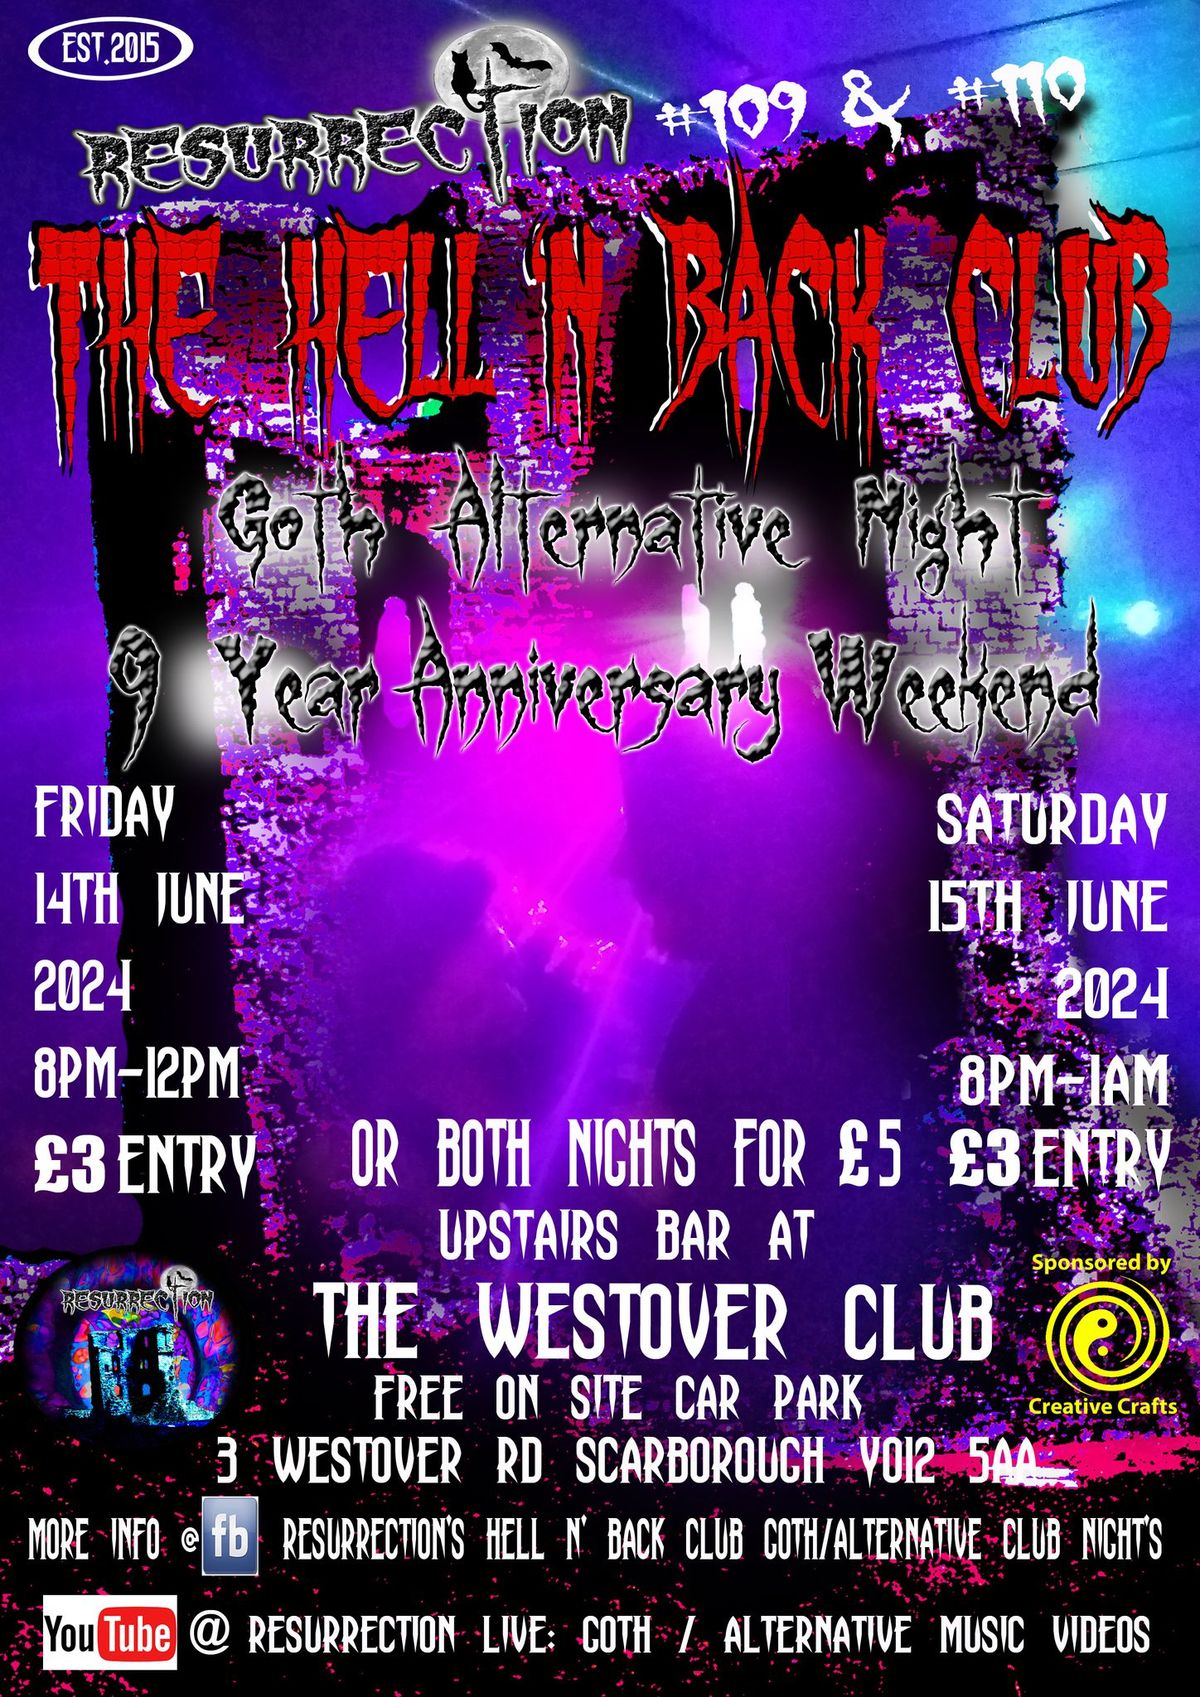 The Hell N Back Club, Goth/Alternative Night, 9 Year Anniversary ...